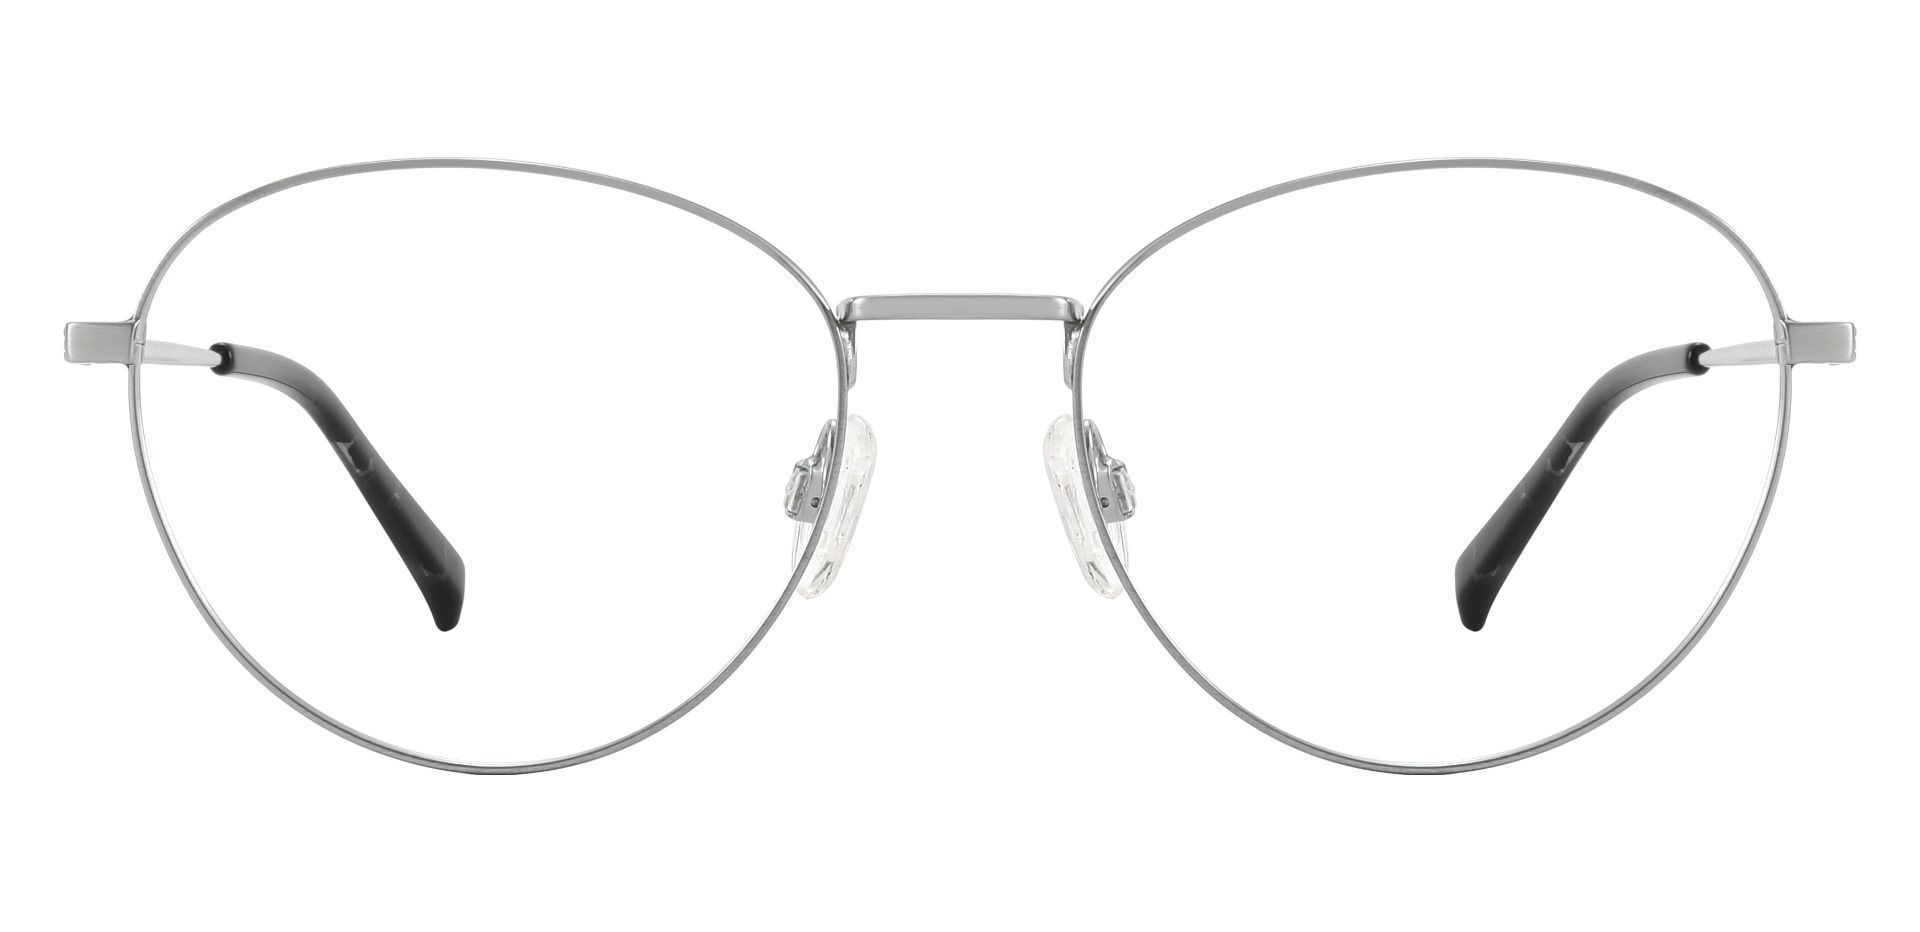 Elmira Oval Prescription Glasses - Silver